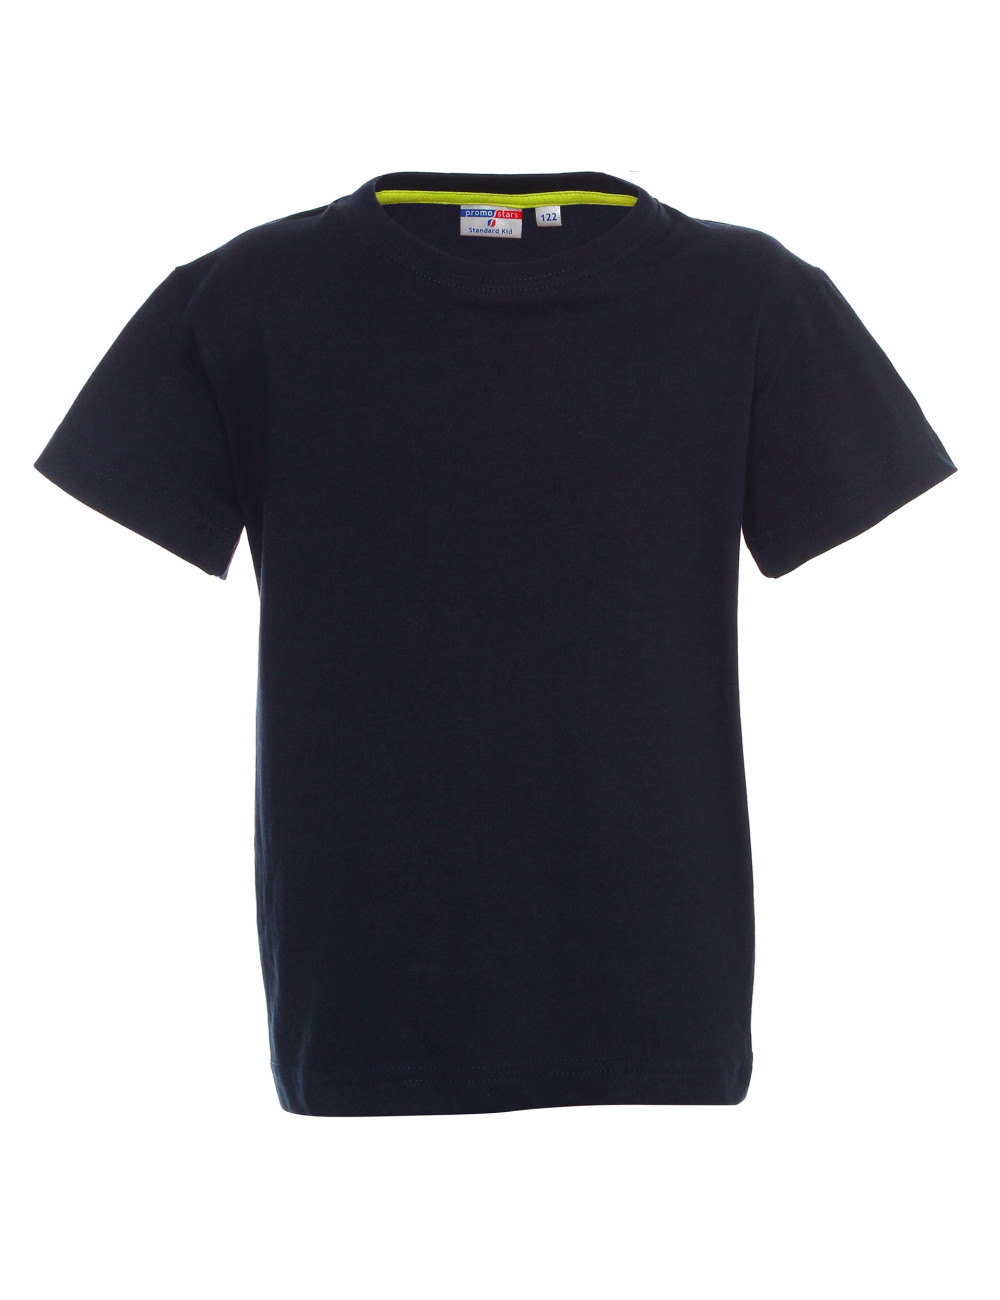 Kinder-T-Shirt Standard Kid 150 Marineblau Promostars